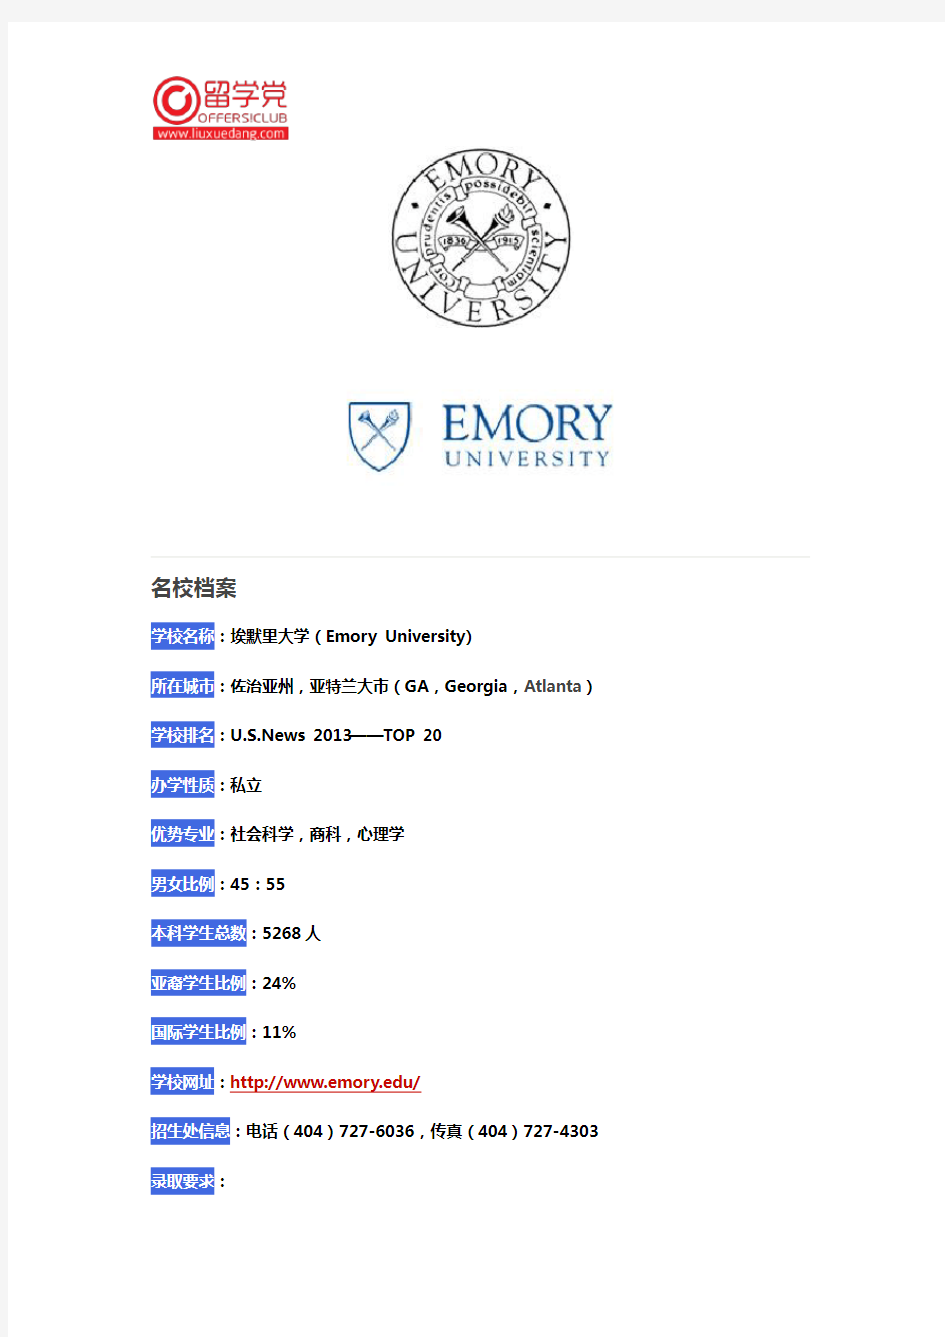 埃默里大学(Emory University)介绍